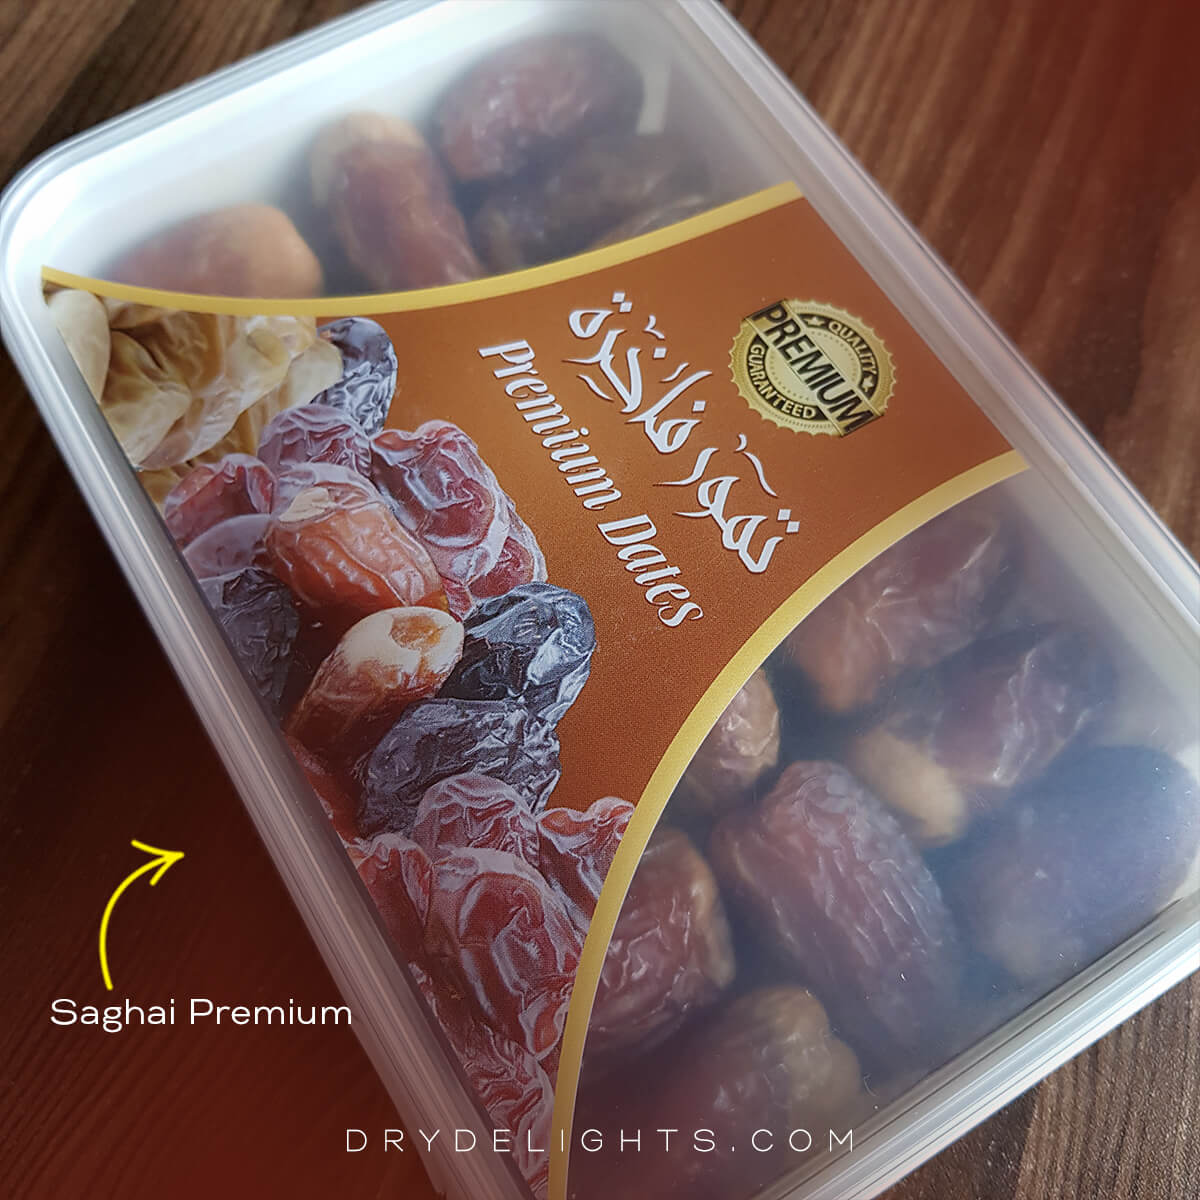 Saghai Premium Box Packaging